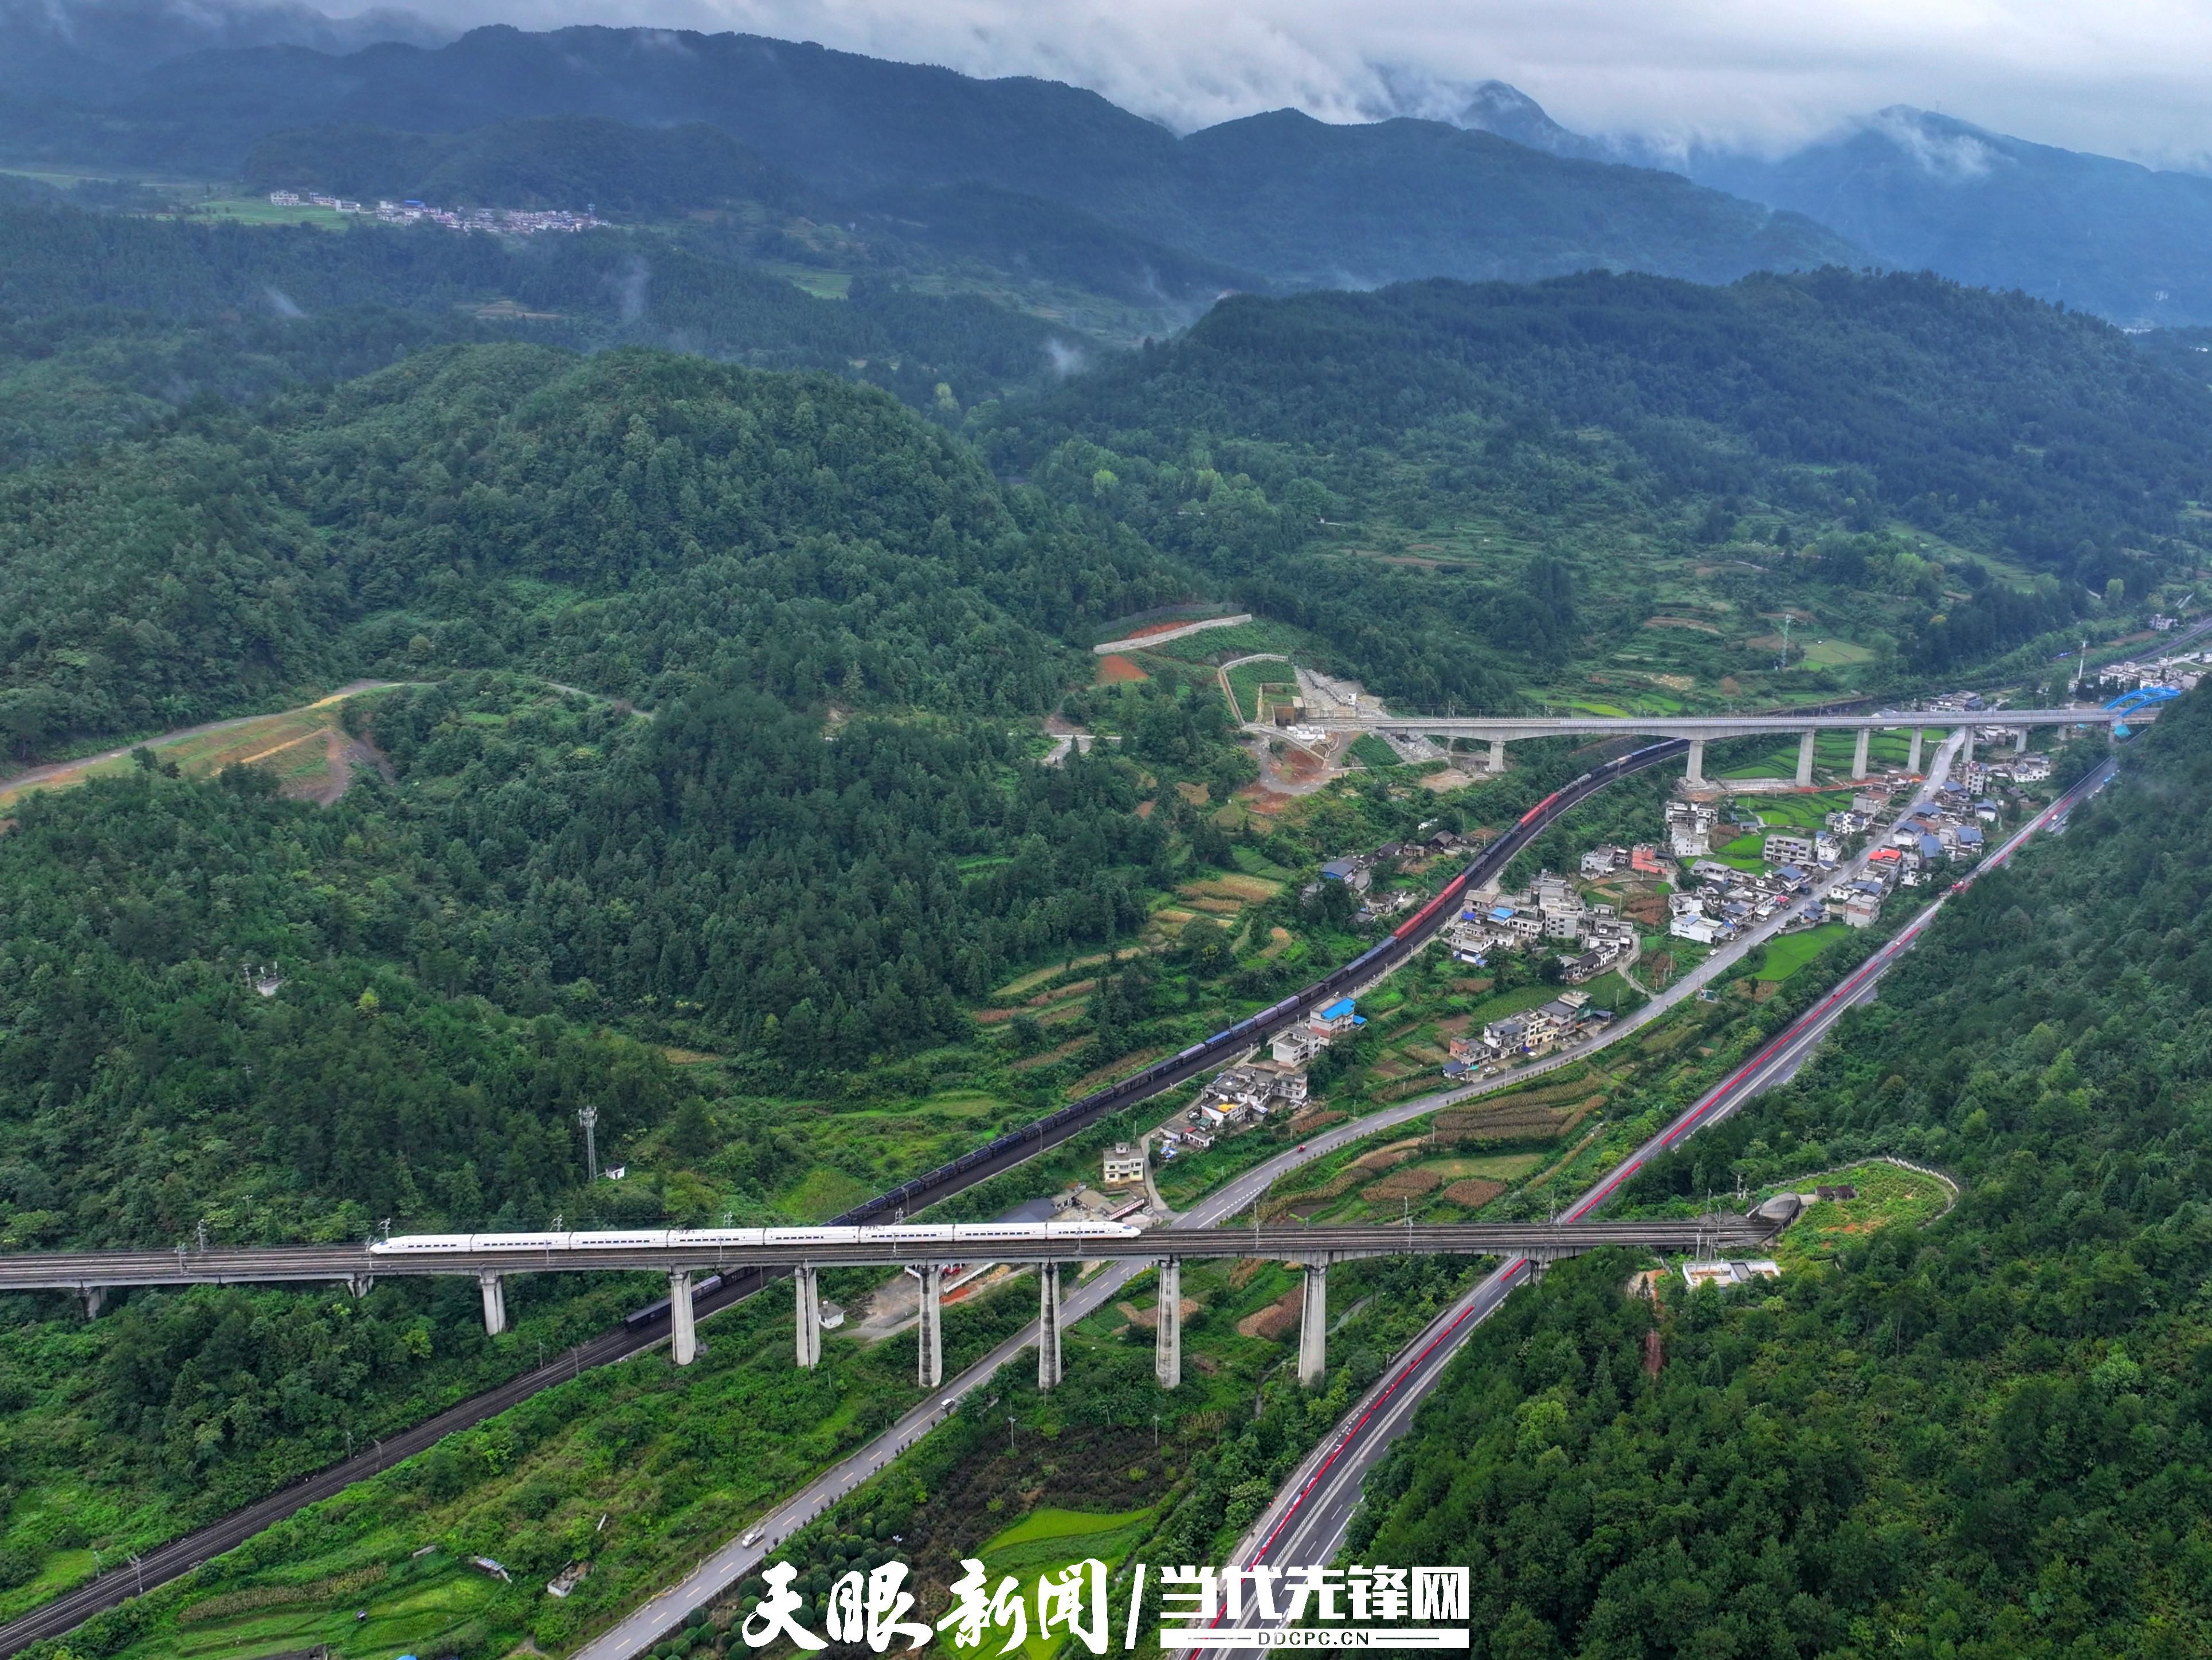 贵广高铁是连接我国西南,华南地区的高铁大通道,也是八纵八横高速